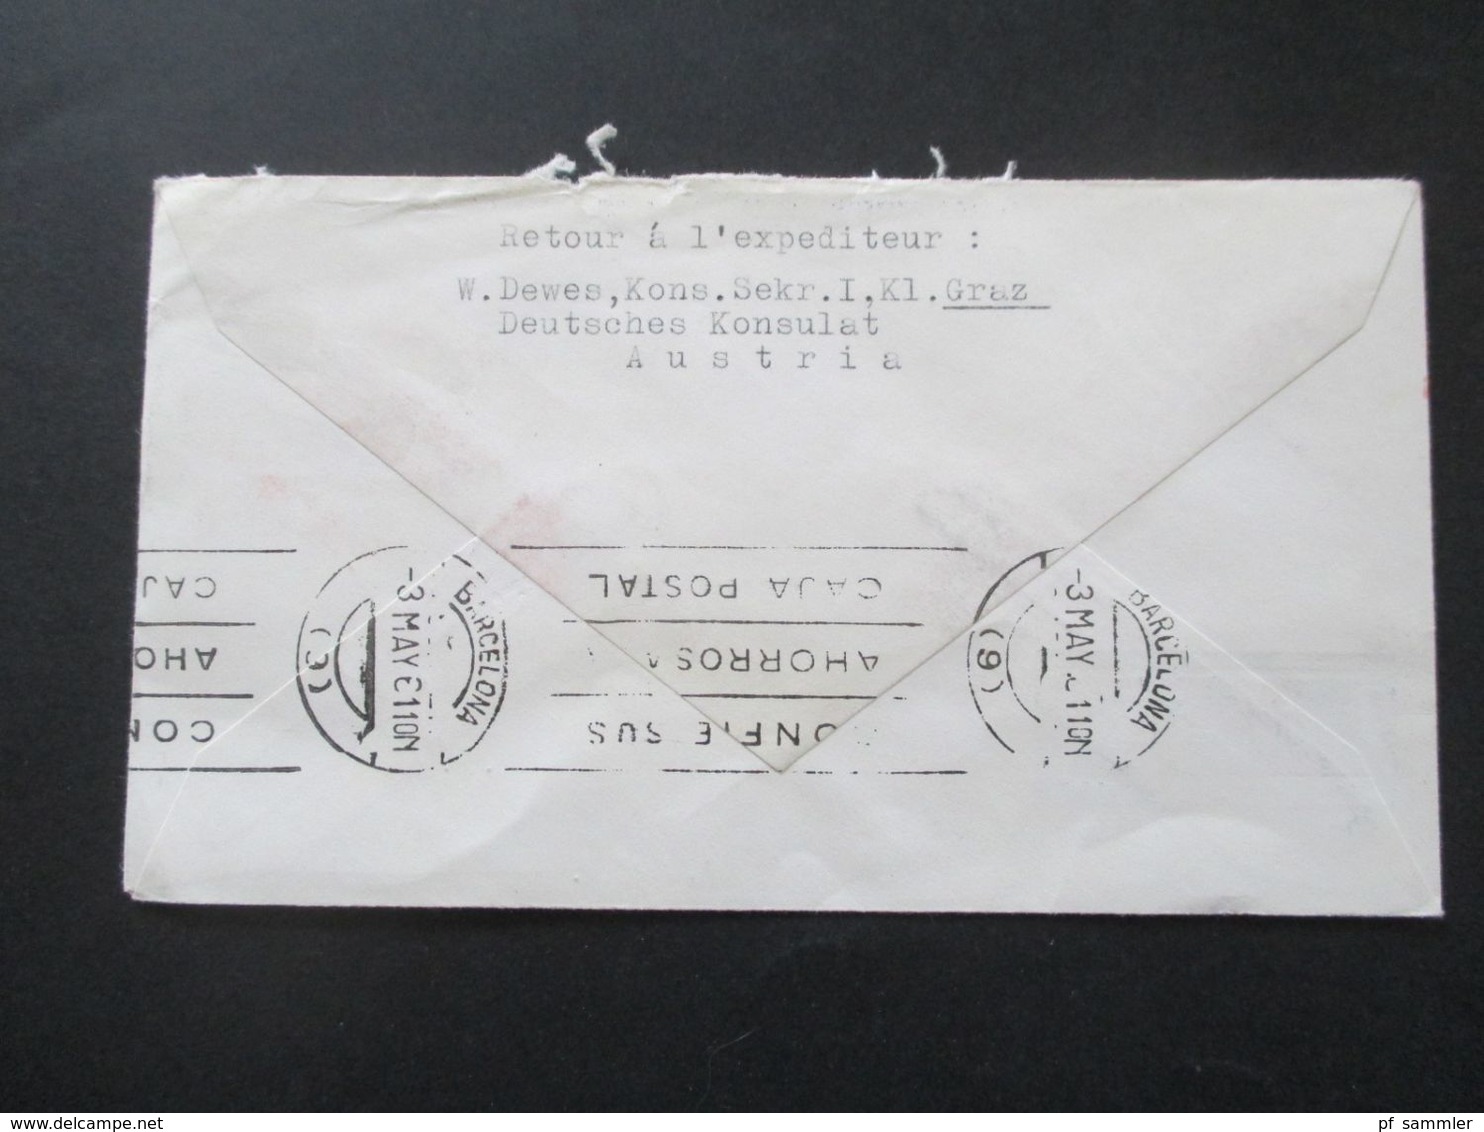 Österreich 1960 / 61 AUA Erstflüge 9 Belege + 1x Luposta Sternflug. Flugpost Belege / Poste Restante - Briefe U. Dokumente